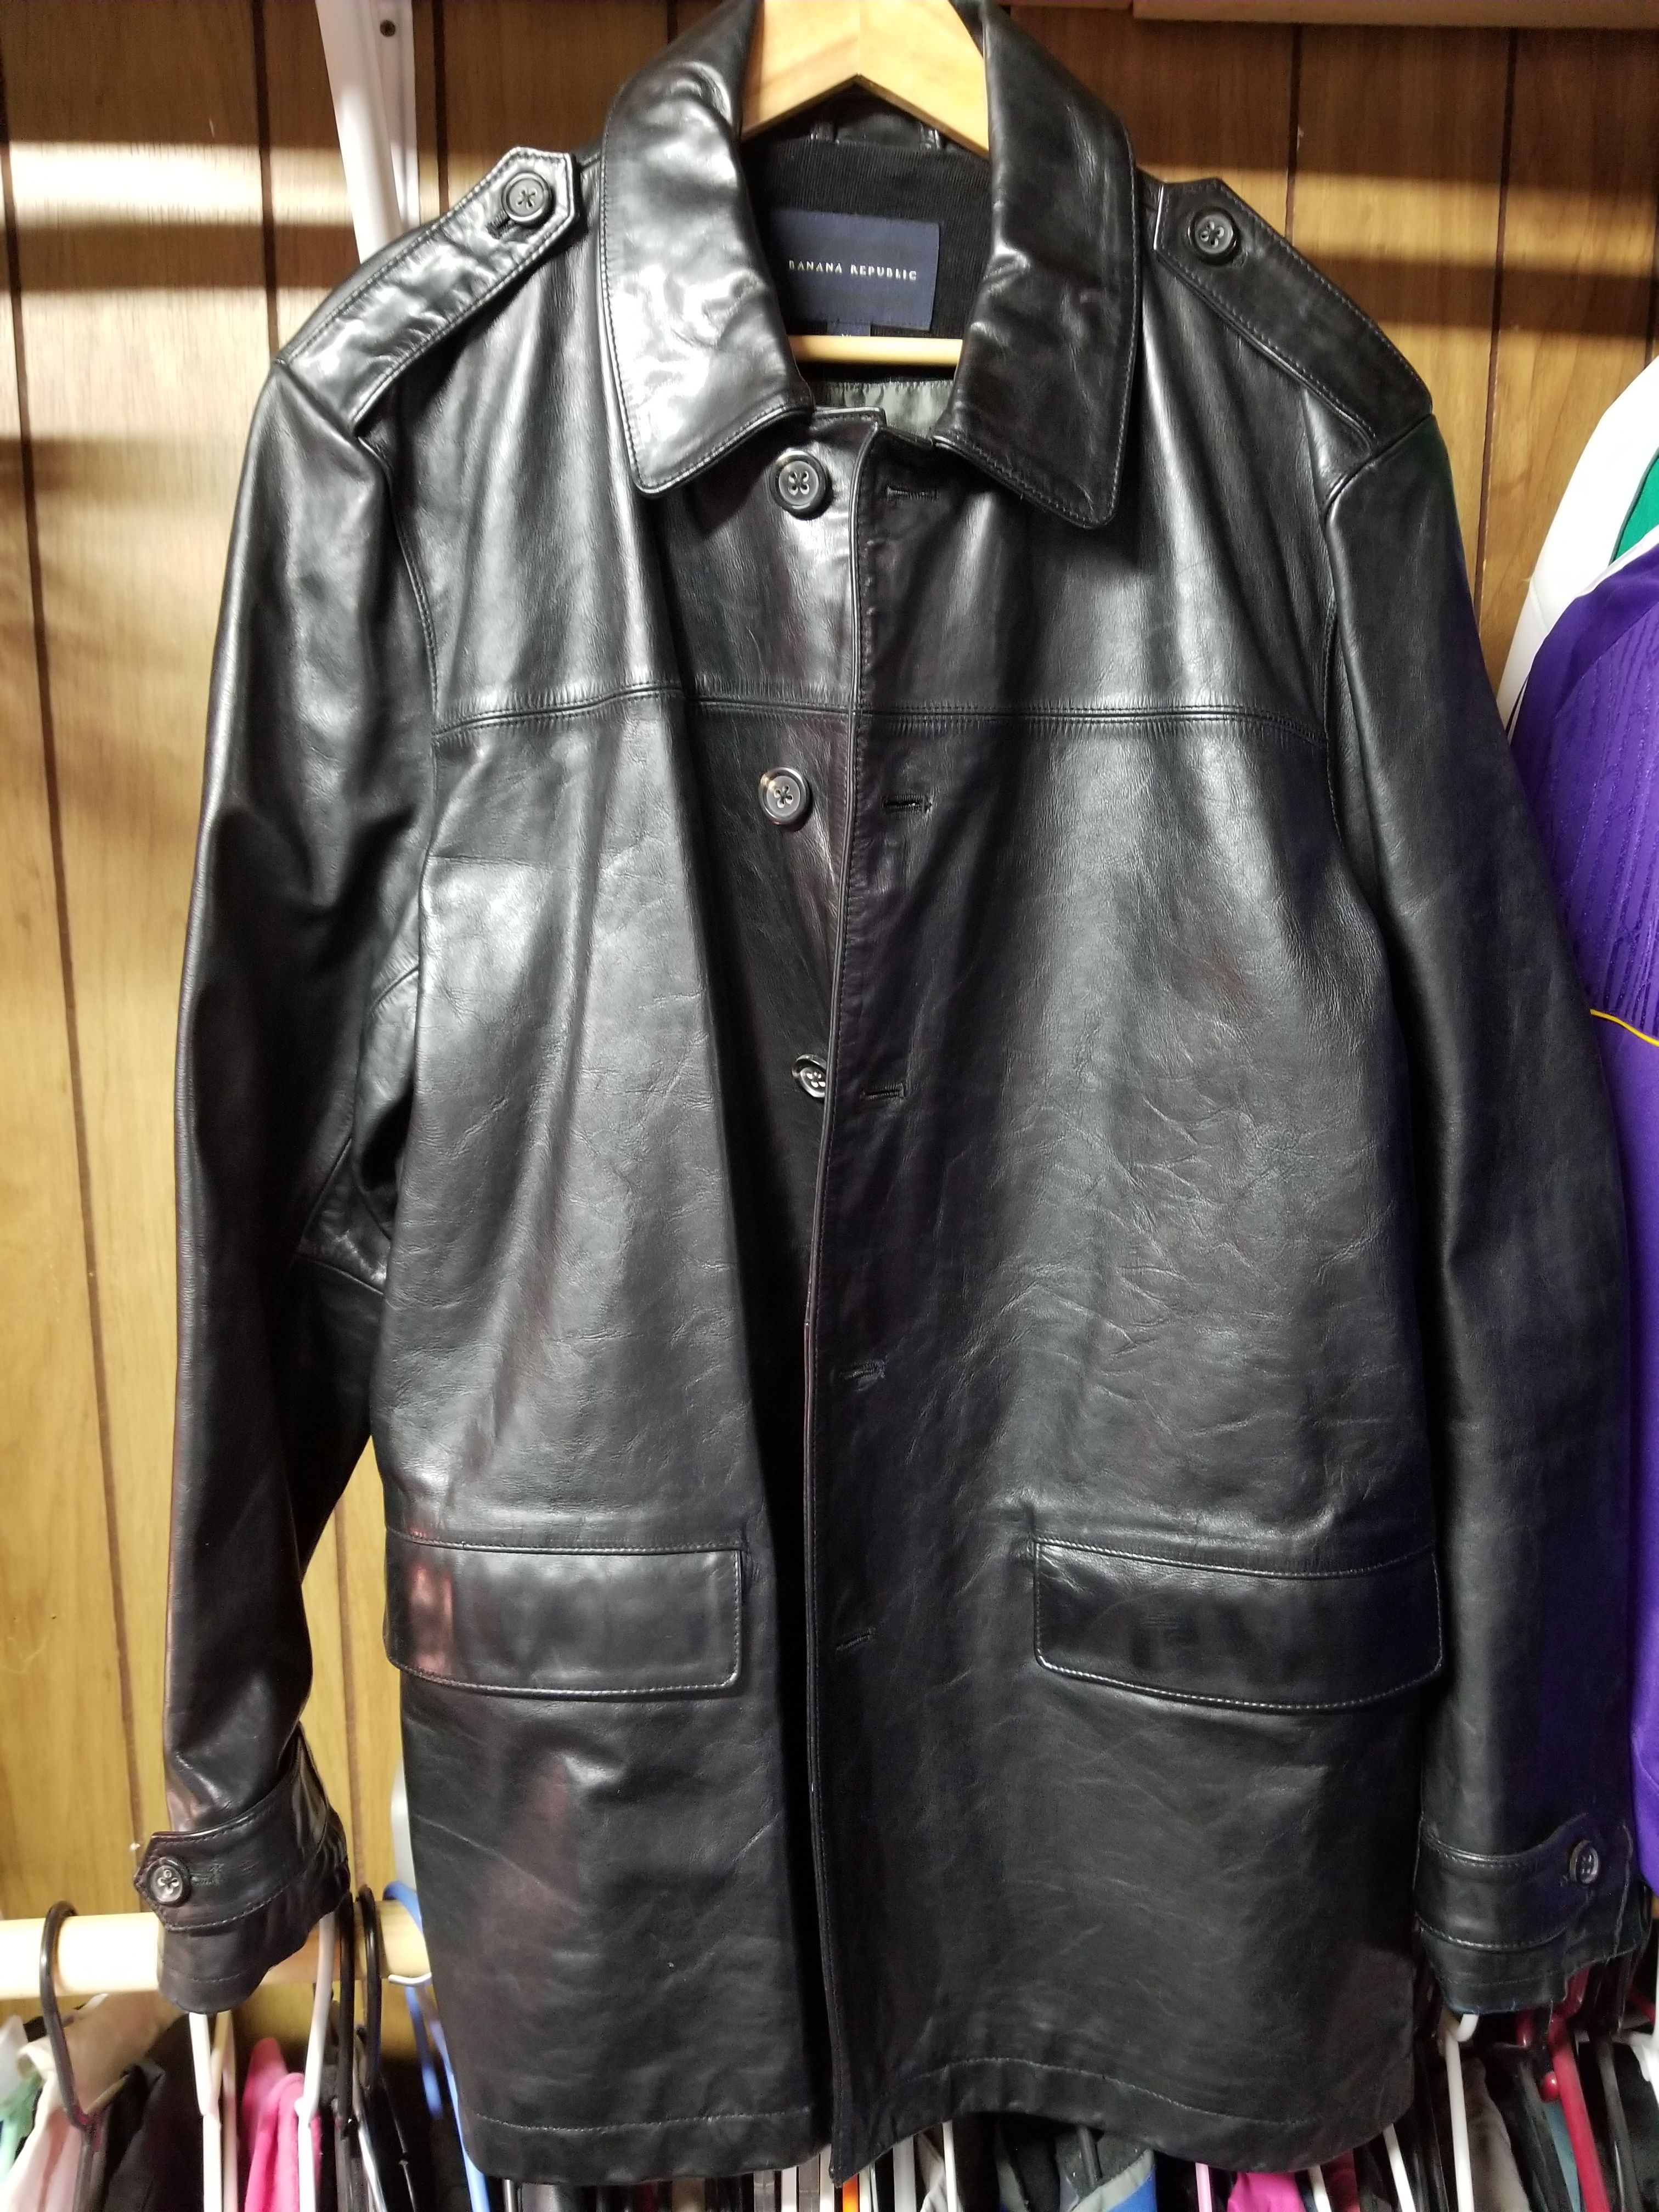 Banana Republic leather jacket